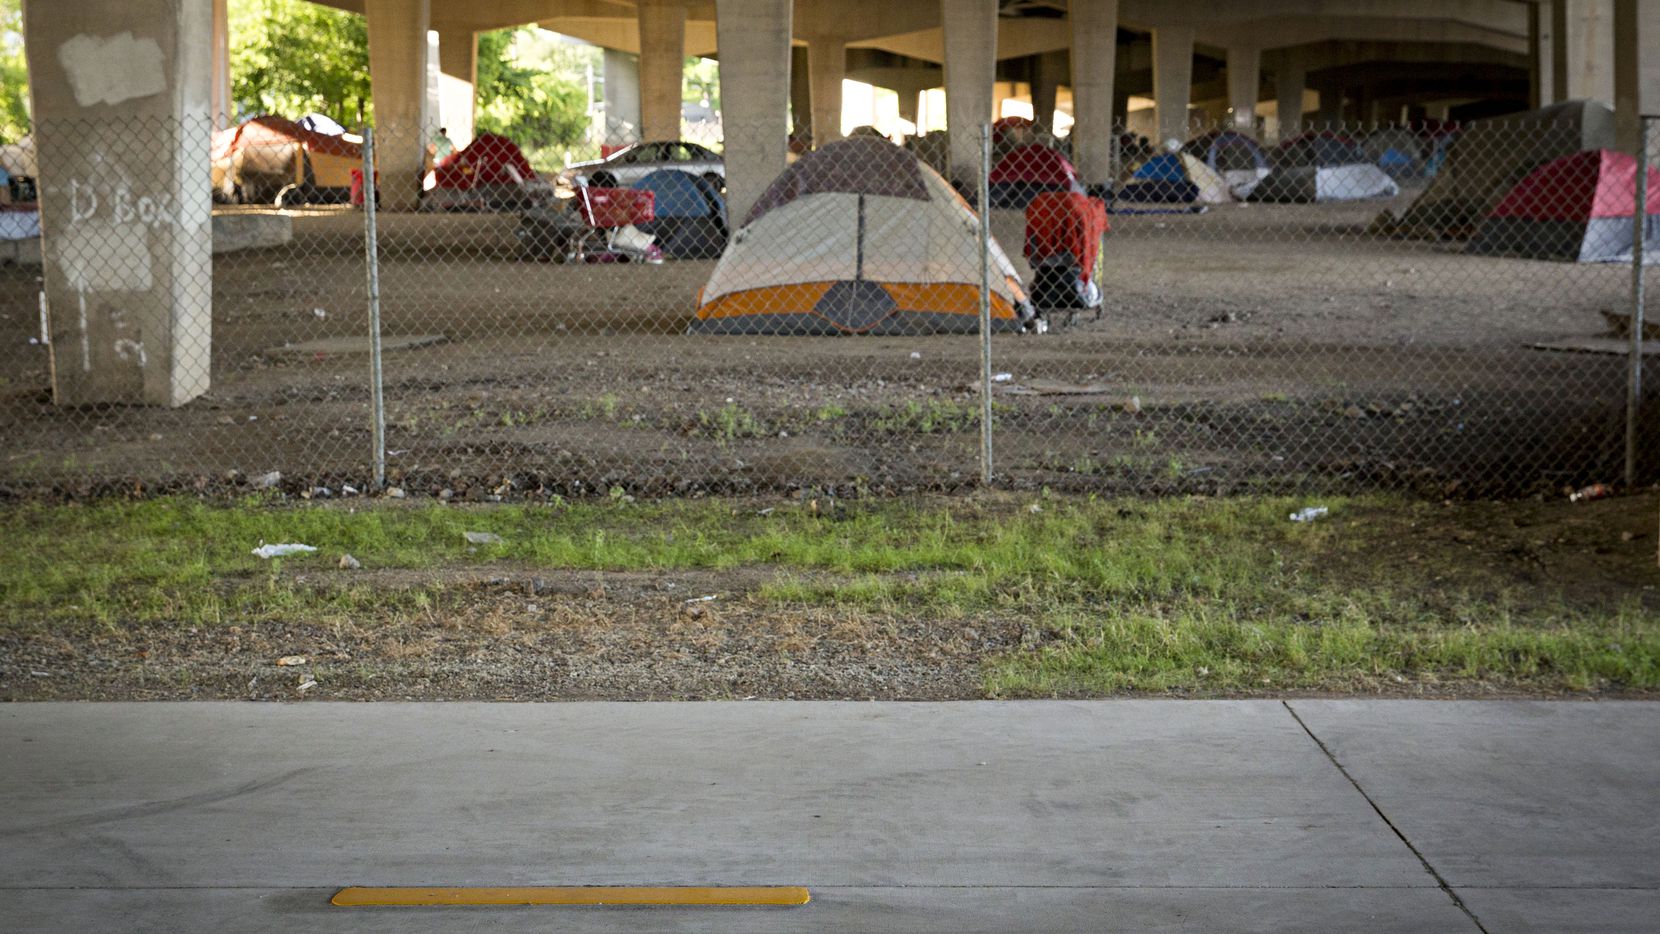 A photograph of a homeless encampment near Fair Park in Dallas, TX